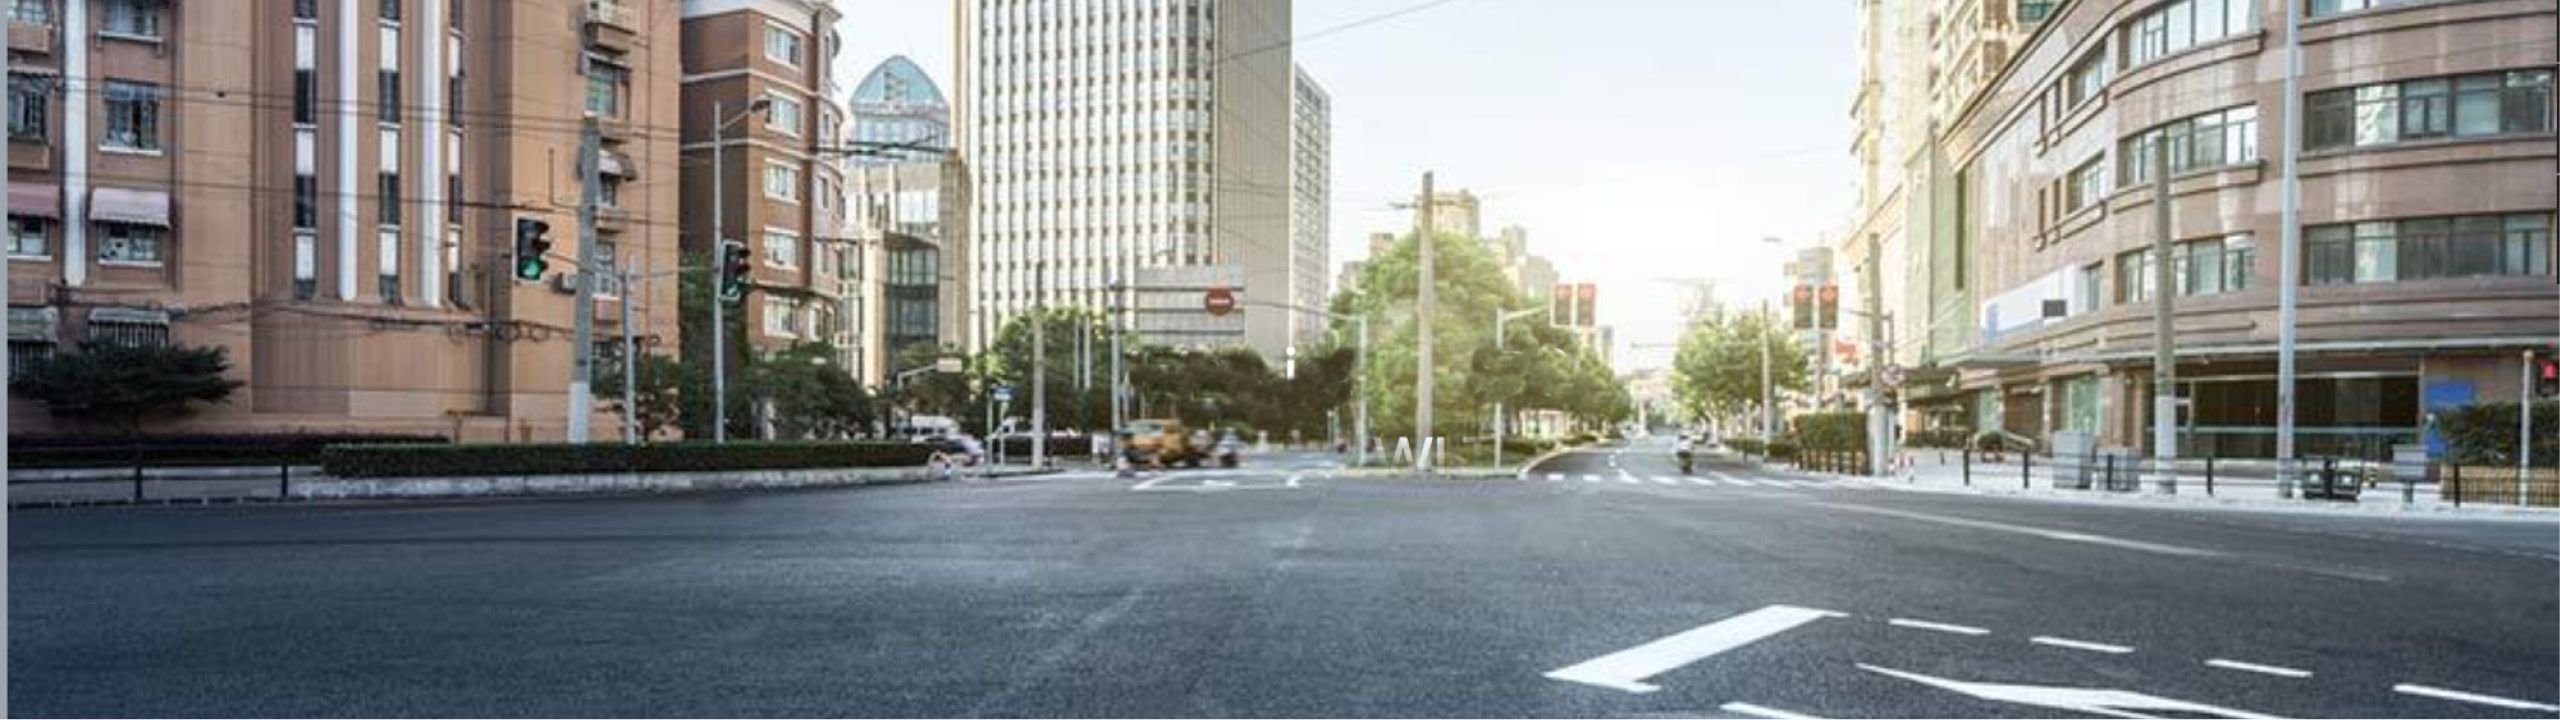 Blick auf eine Straßenkreuzung in urbaner Umgebung